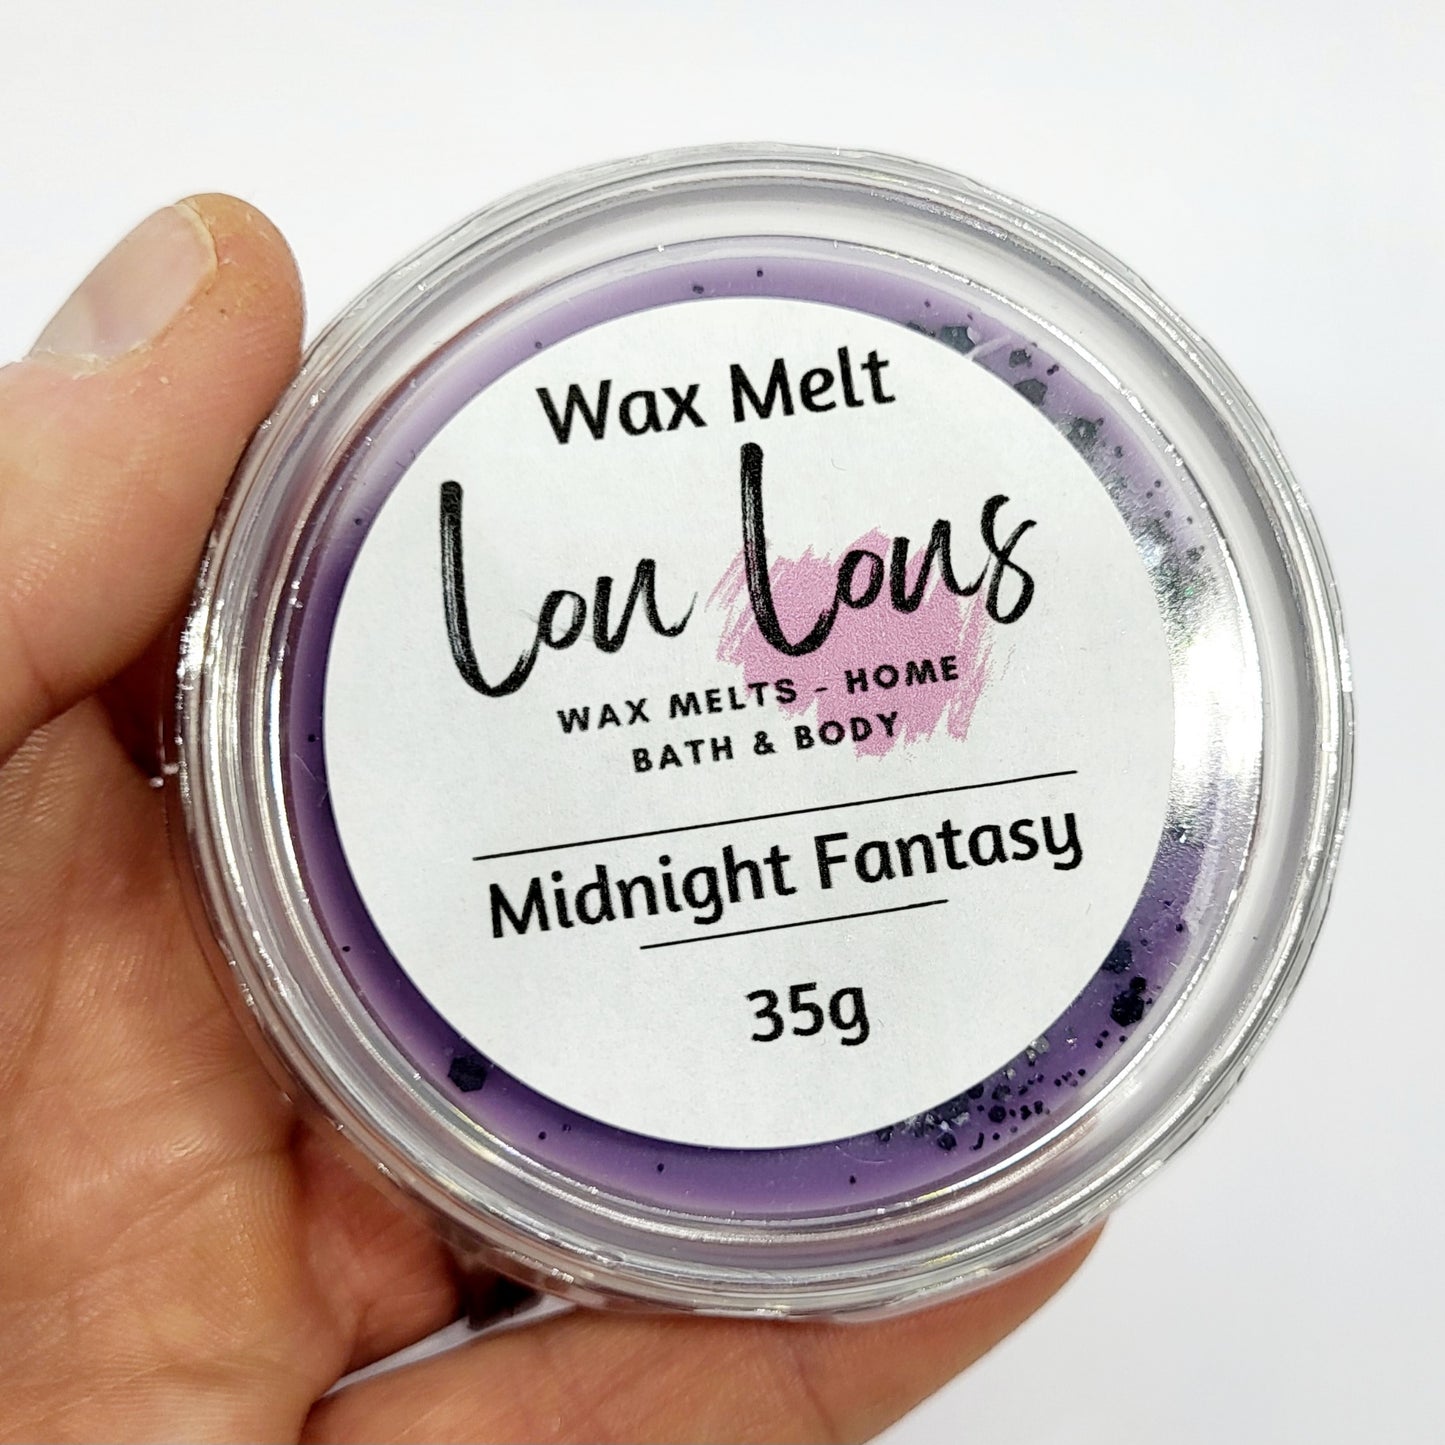 Midnight Fantasy Wax Melt Pot